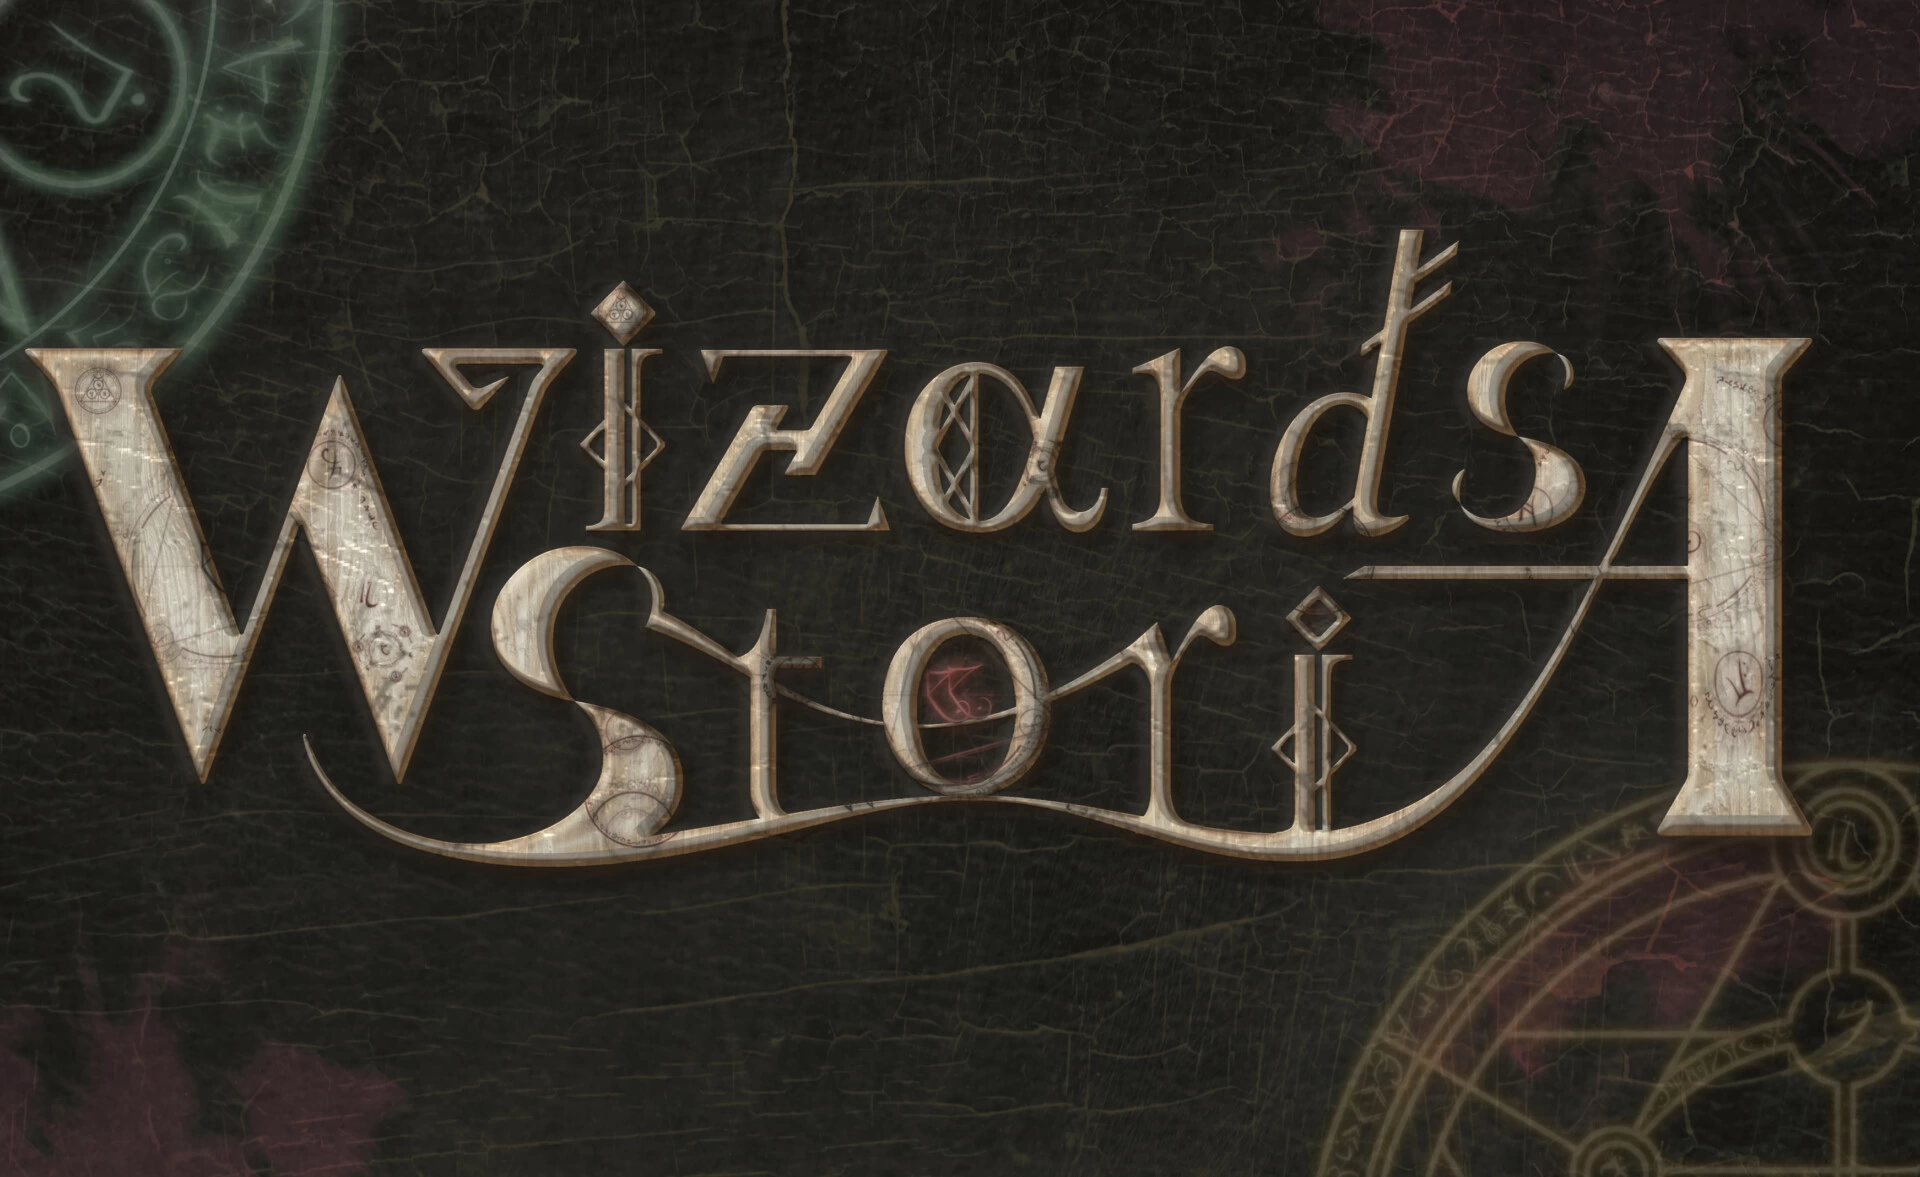 舞台『Wizards Storia -Initiumu-』